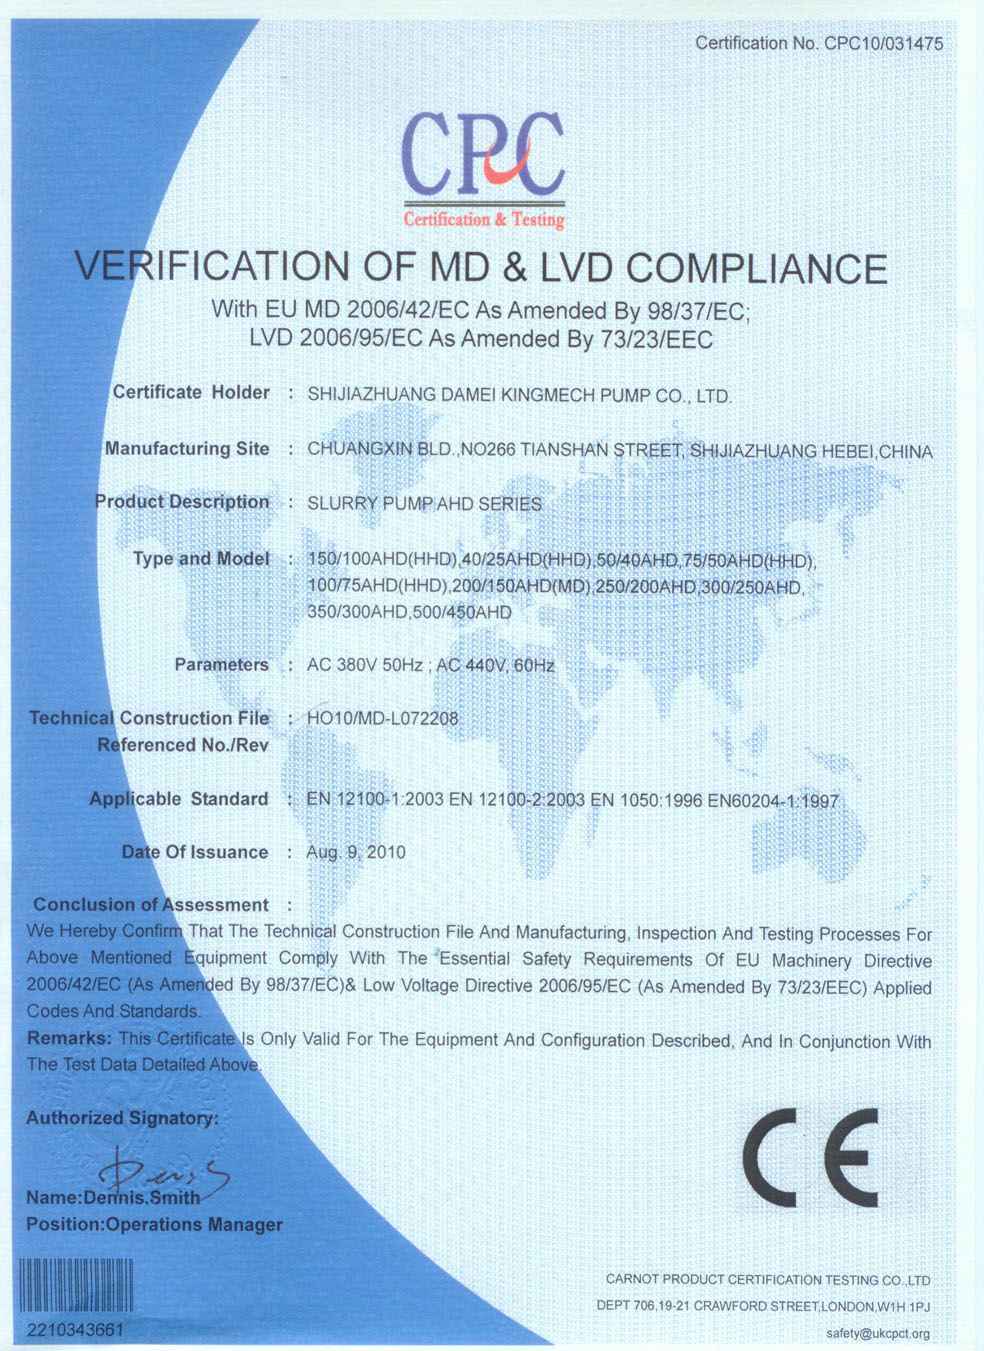 Slurry pump CE certificate